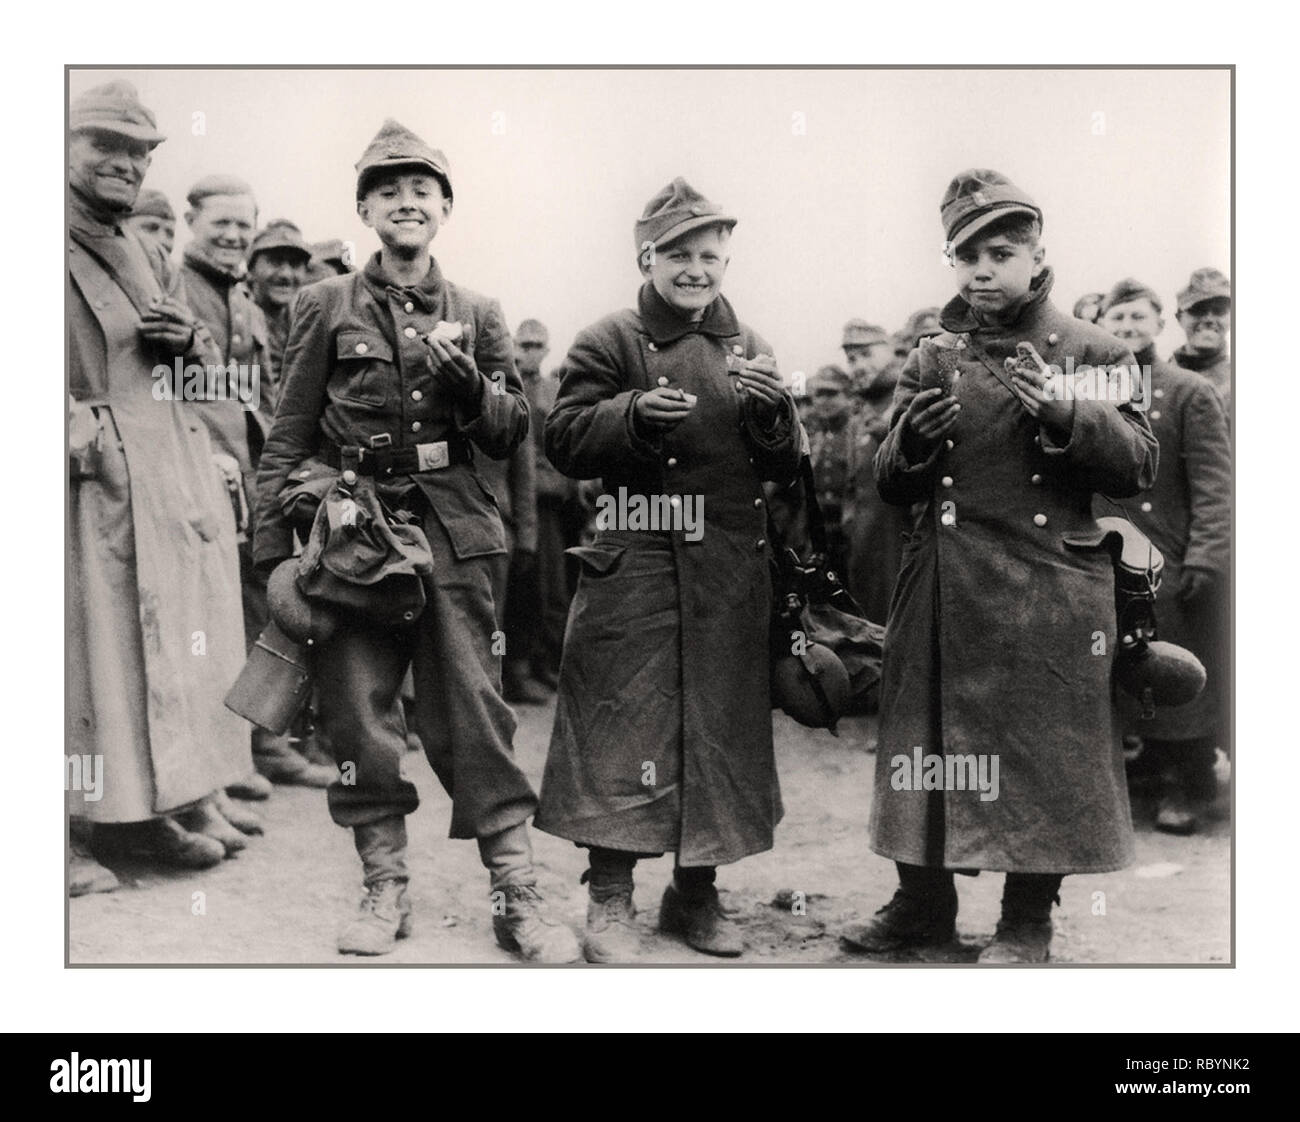 HITLER ejército de jóvenes de 14 años de edad, los adolescentes alemanes, soldados de la Juventud de Hitler, capturado por unidades del ejército de los Estados Unidos en abril de 1945. Provincia Berstadt, Hessen, Alemania Fecha: Abril de 1945 Foto de stock